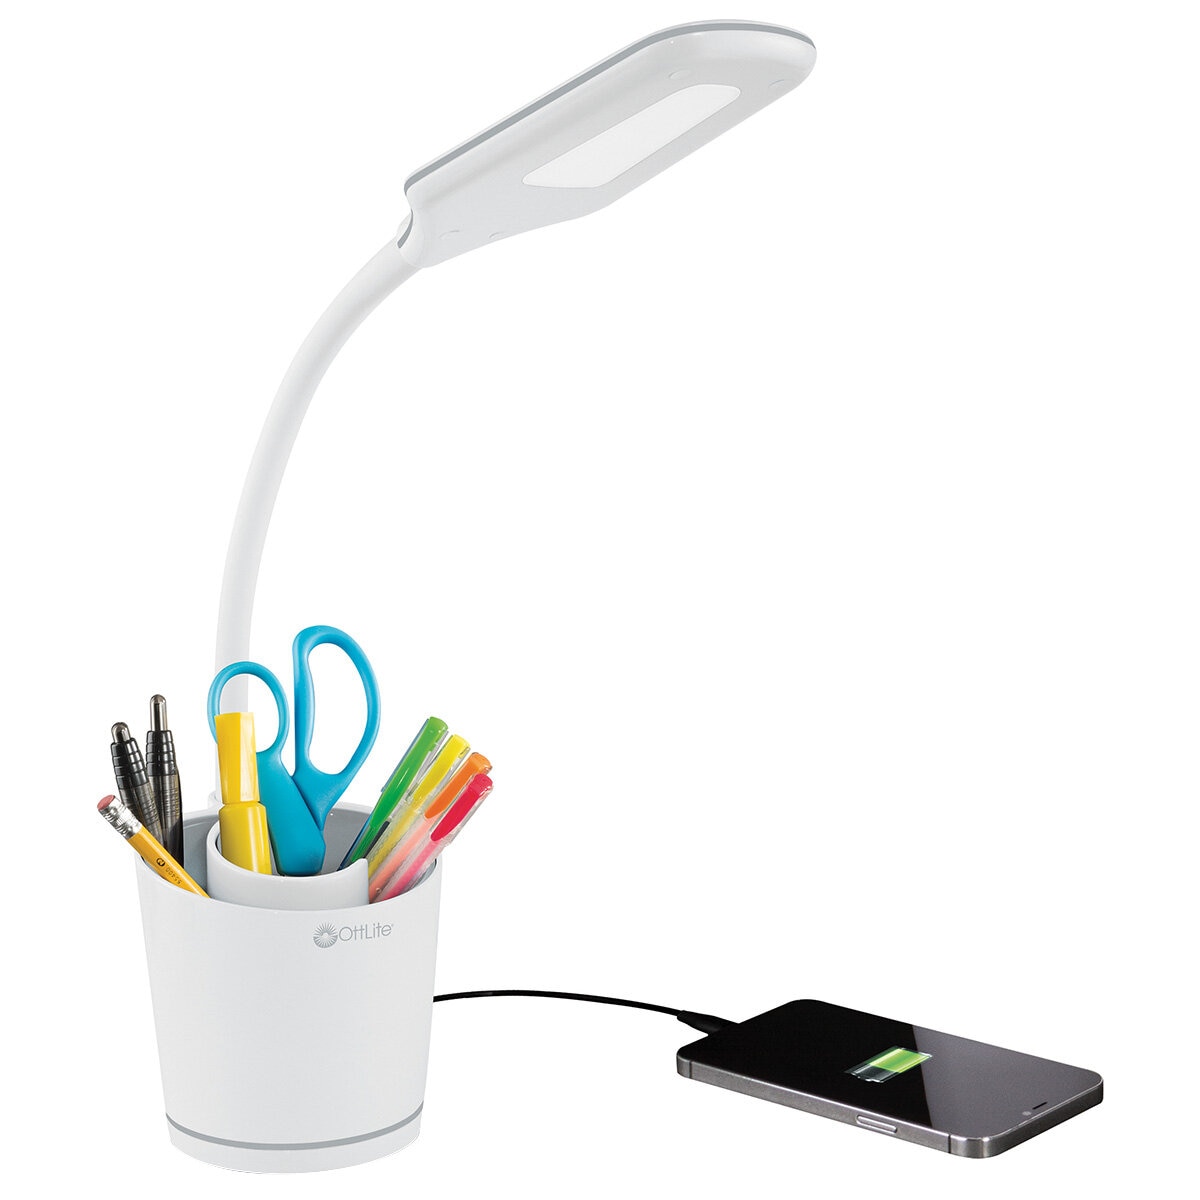 OttLite Swirl Organiser LED Lamp with USB Charging Port |...